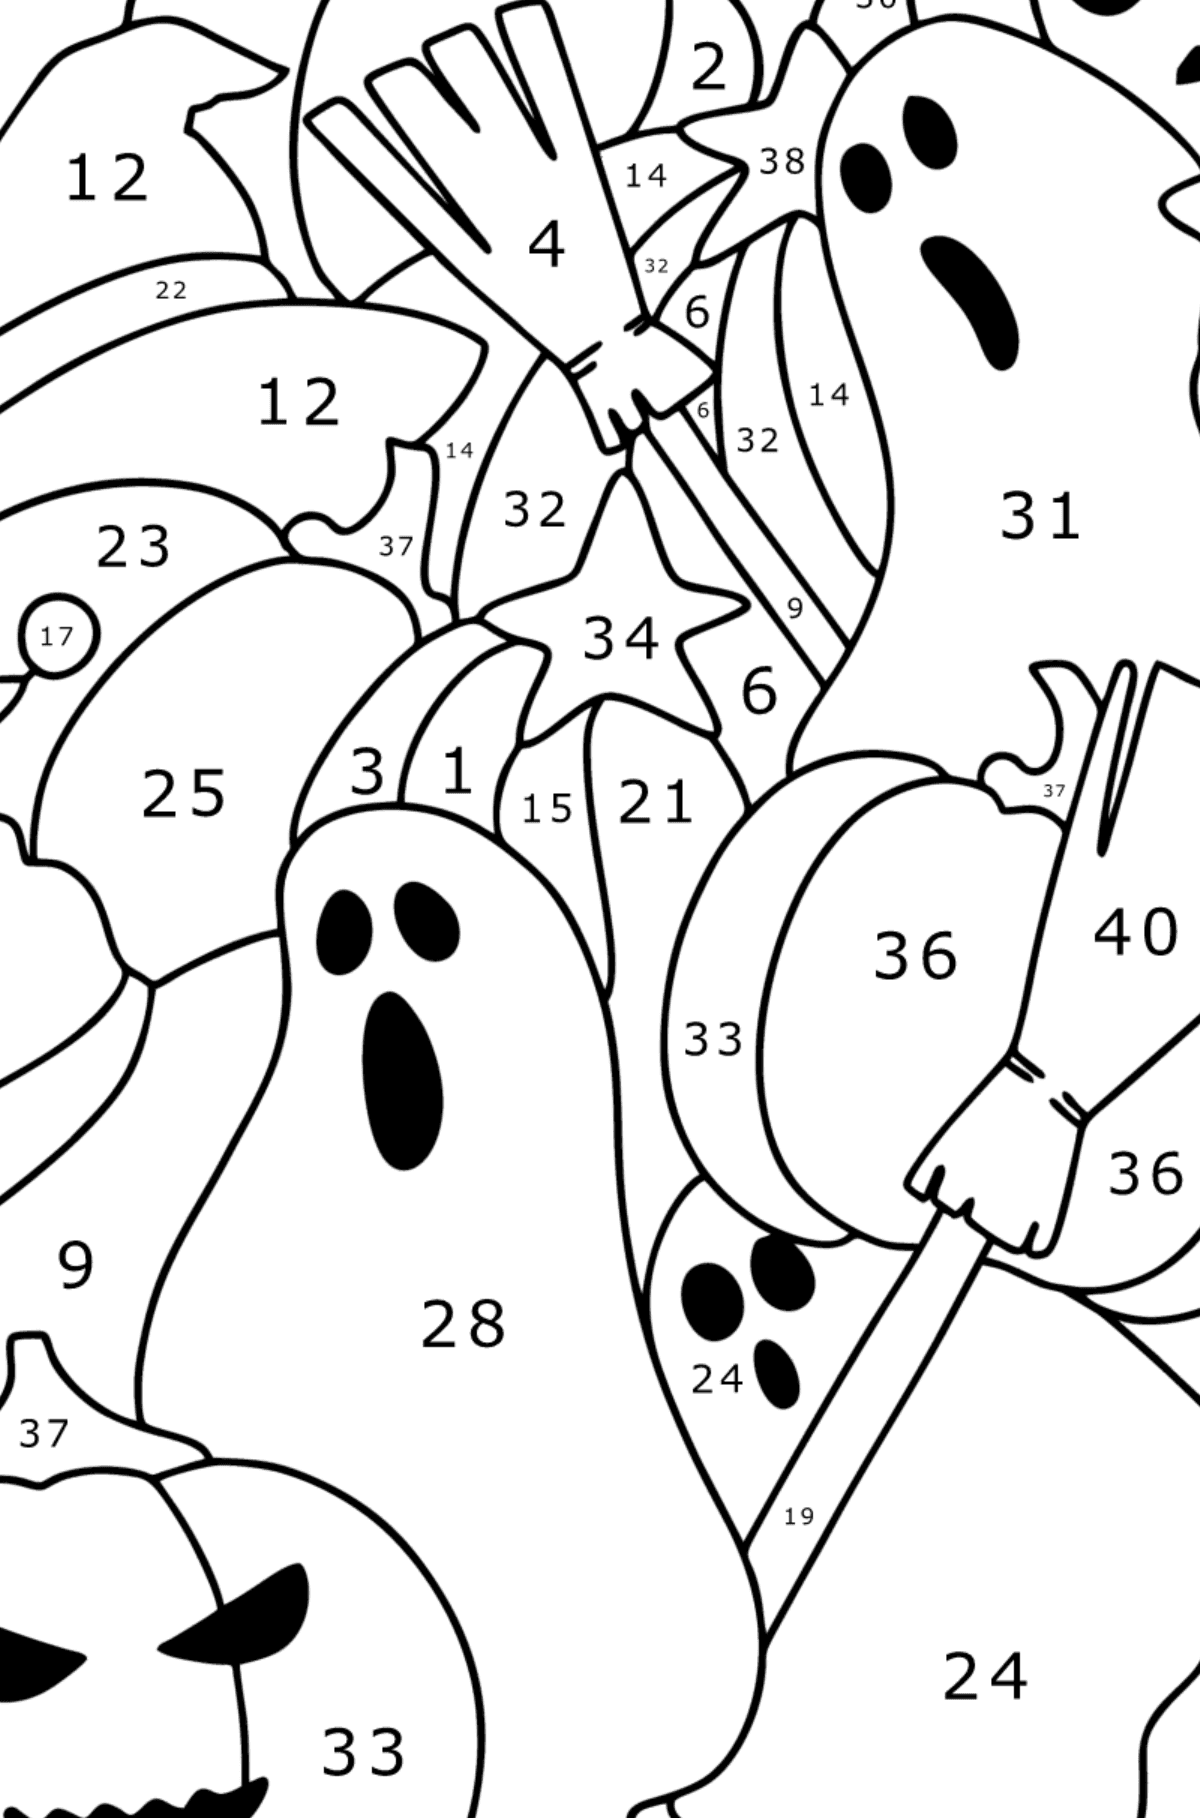 Doodle Malseite für Kinder - Halloween - Malen nach Zahlen für Kinder